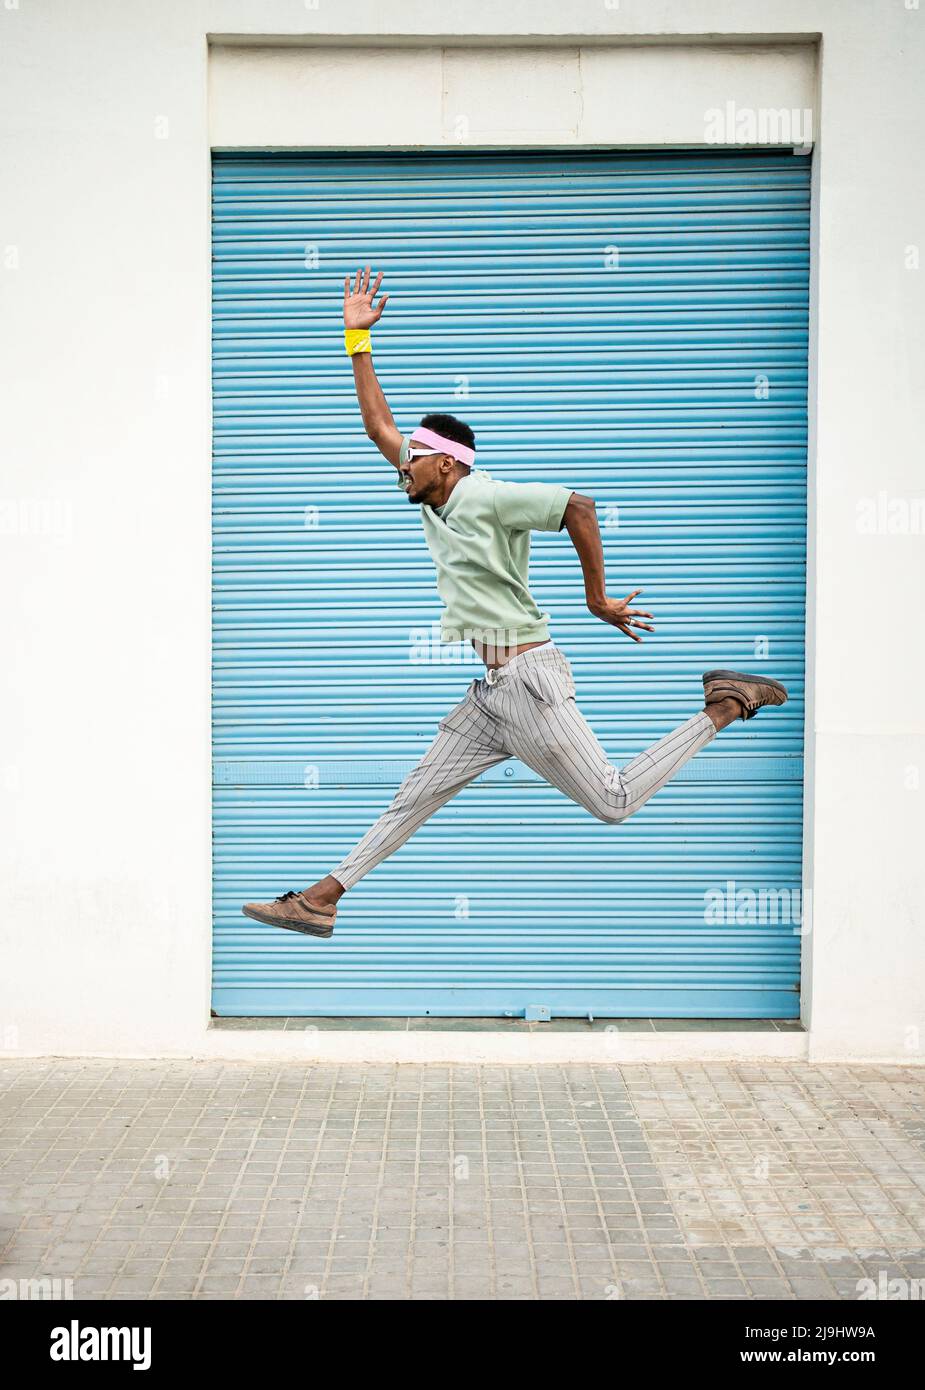 Verspielter junger Mann, der mitten in der Luft springt und die Hand auf dem Fußpfad angehoben hat Stockfoto